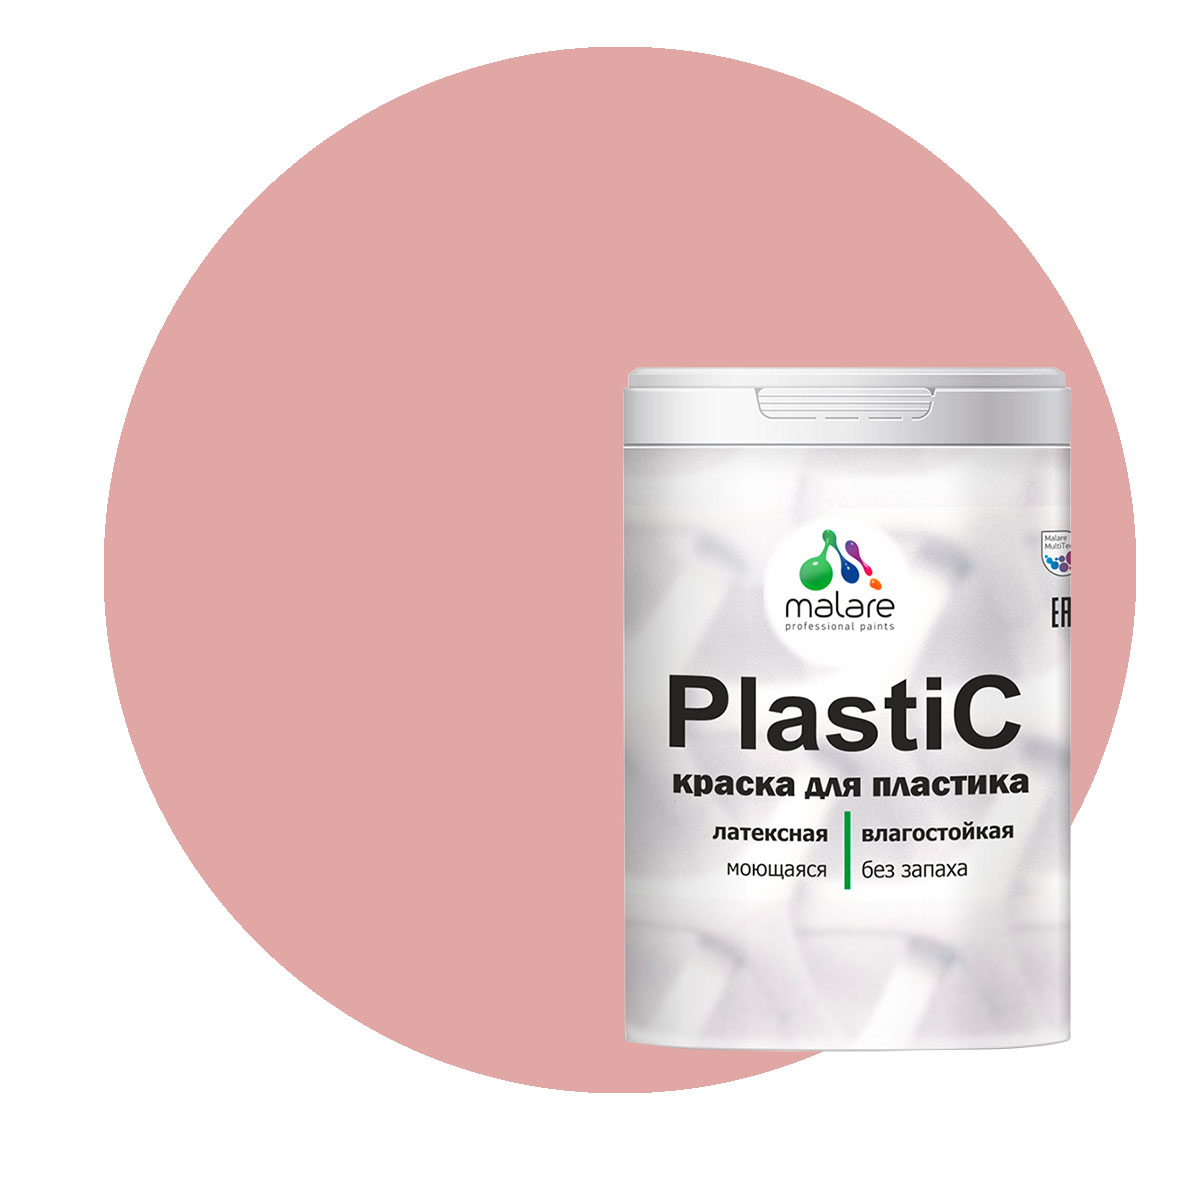 Краска Malare PlastiC для пластика, ПВХ, для сайдинга, розовый пион 1 кг. краска malare plastic для пластика пвх для сайдинга розовый пион 2 кг